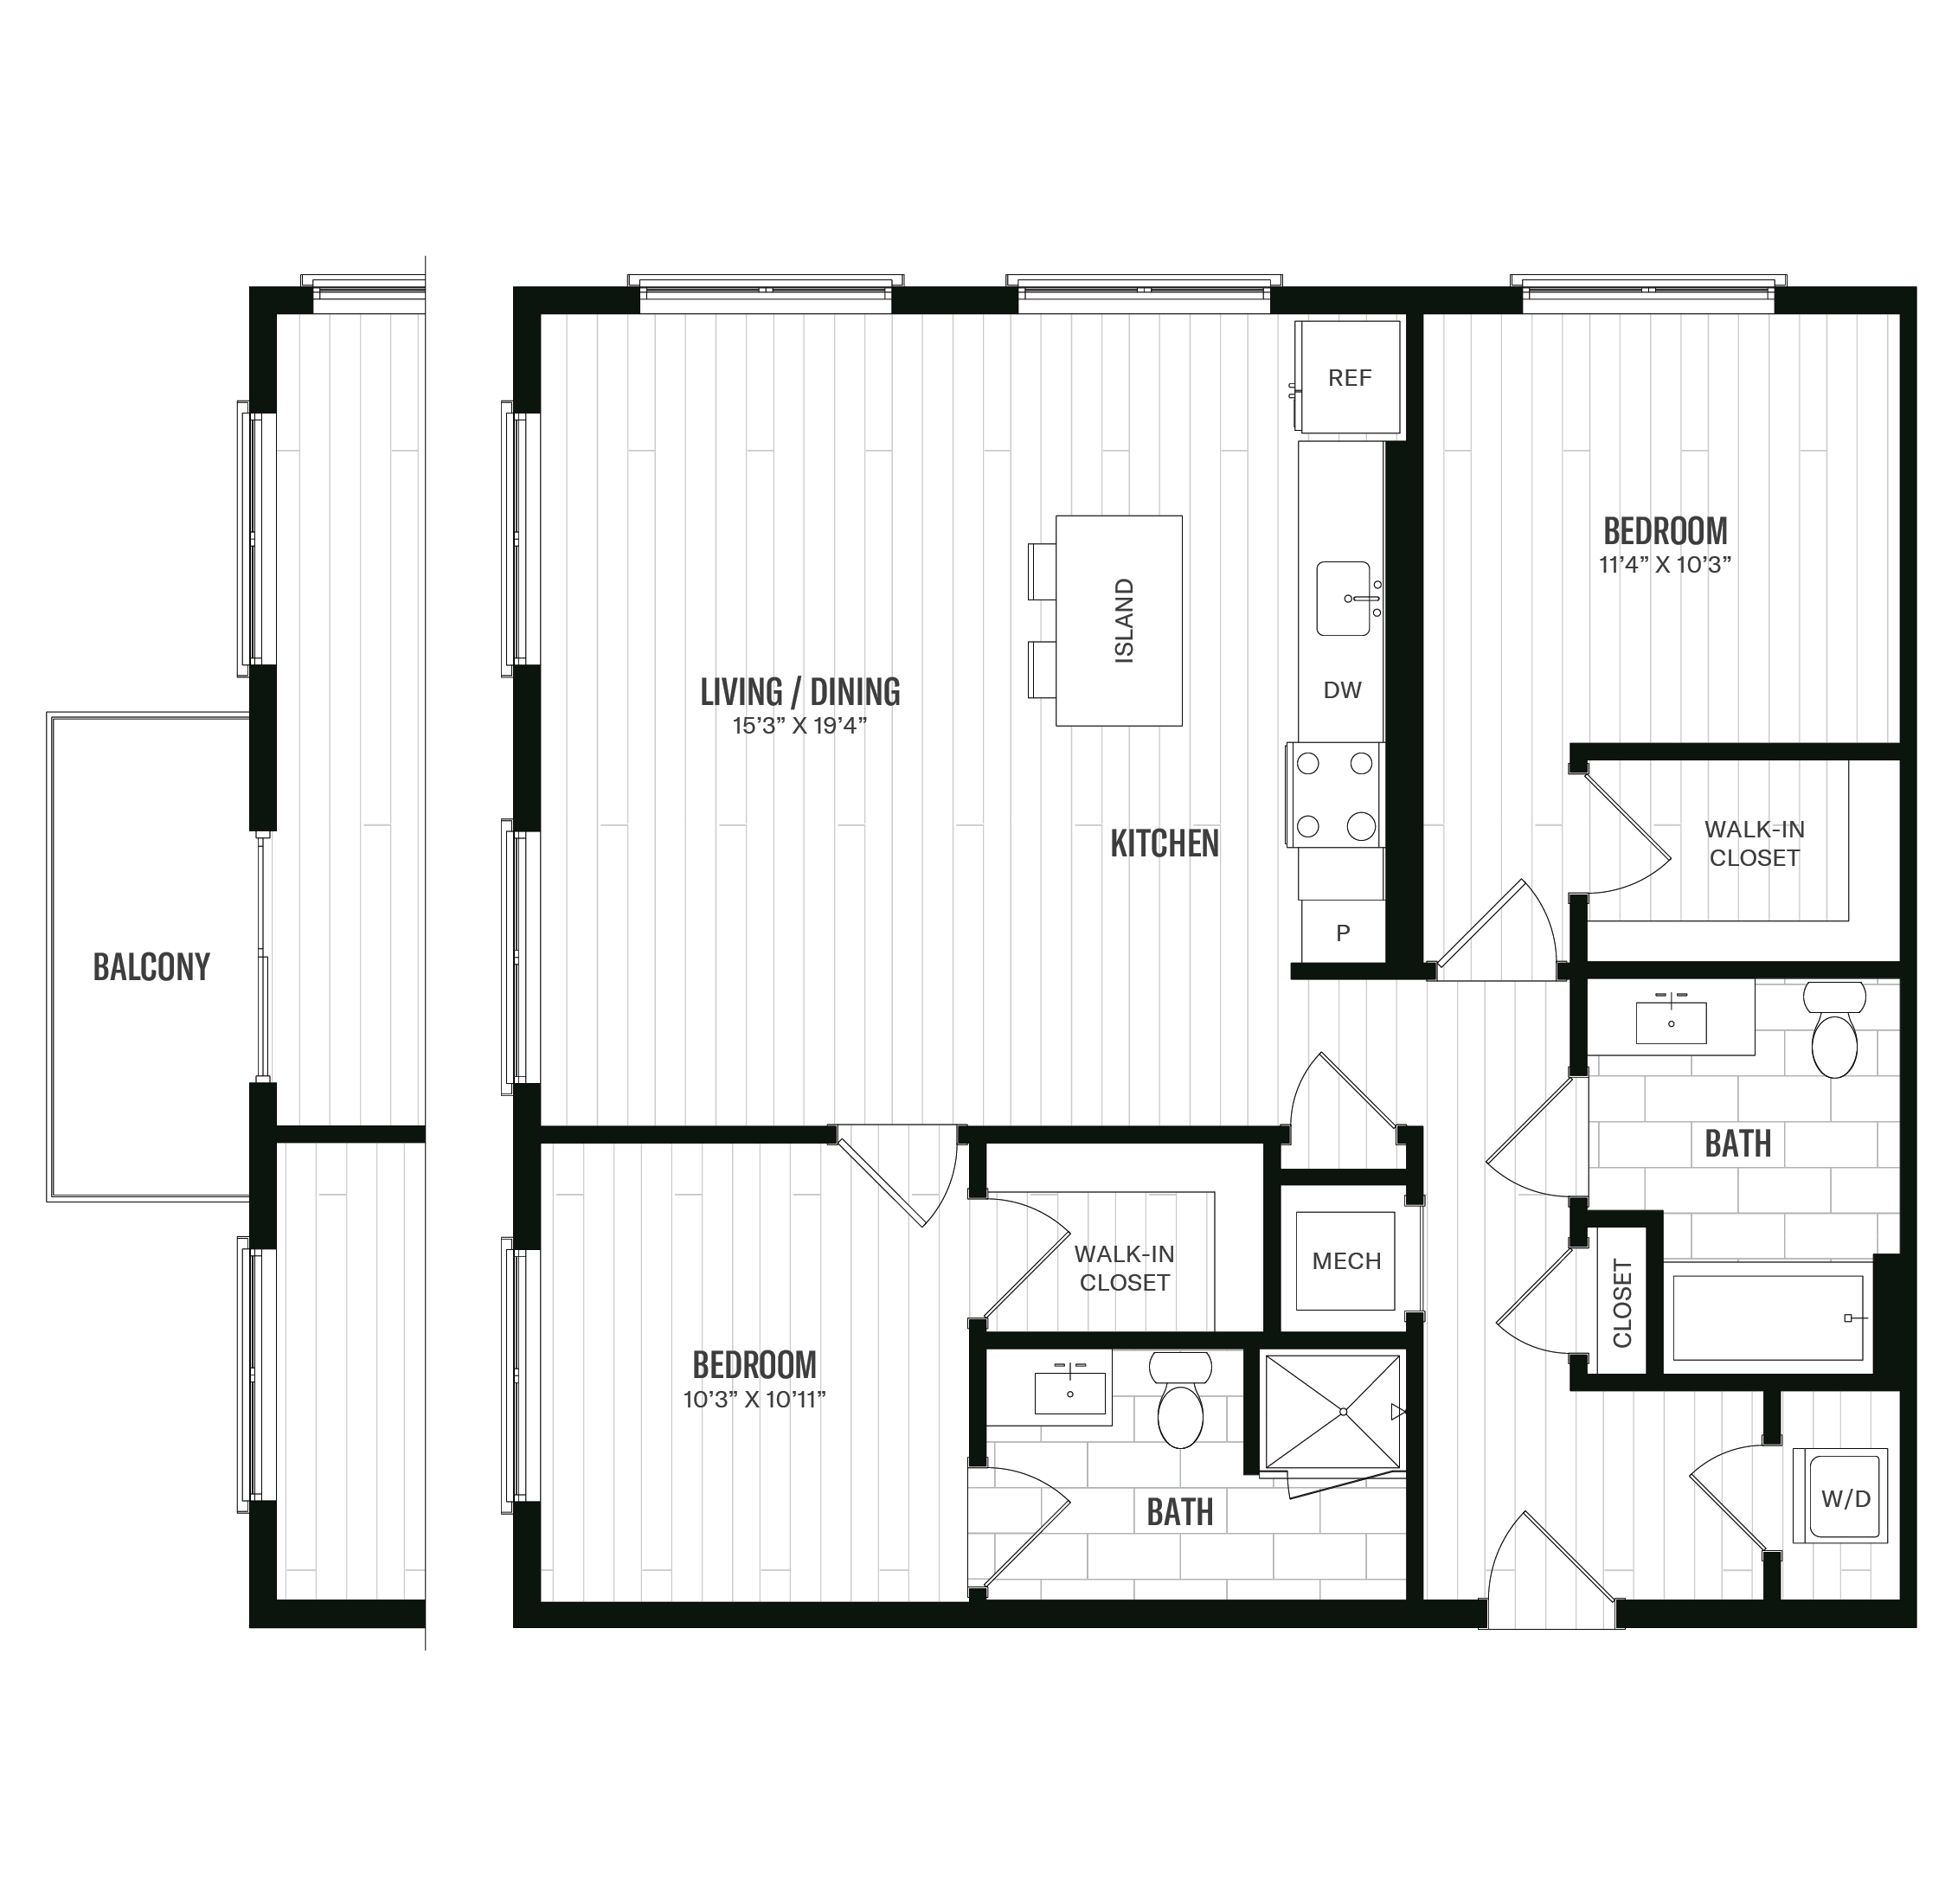 Floorplan image of unit 401